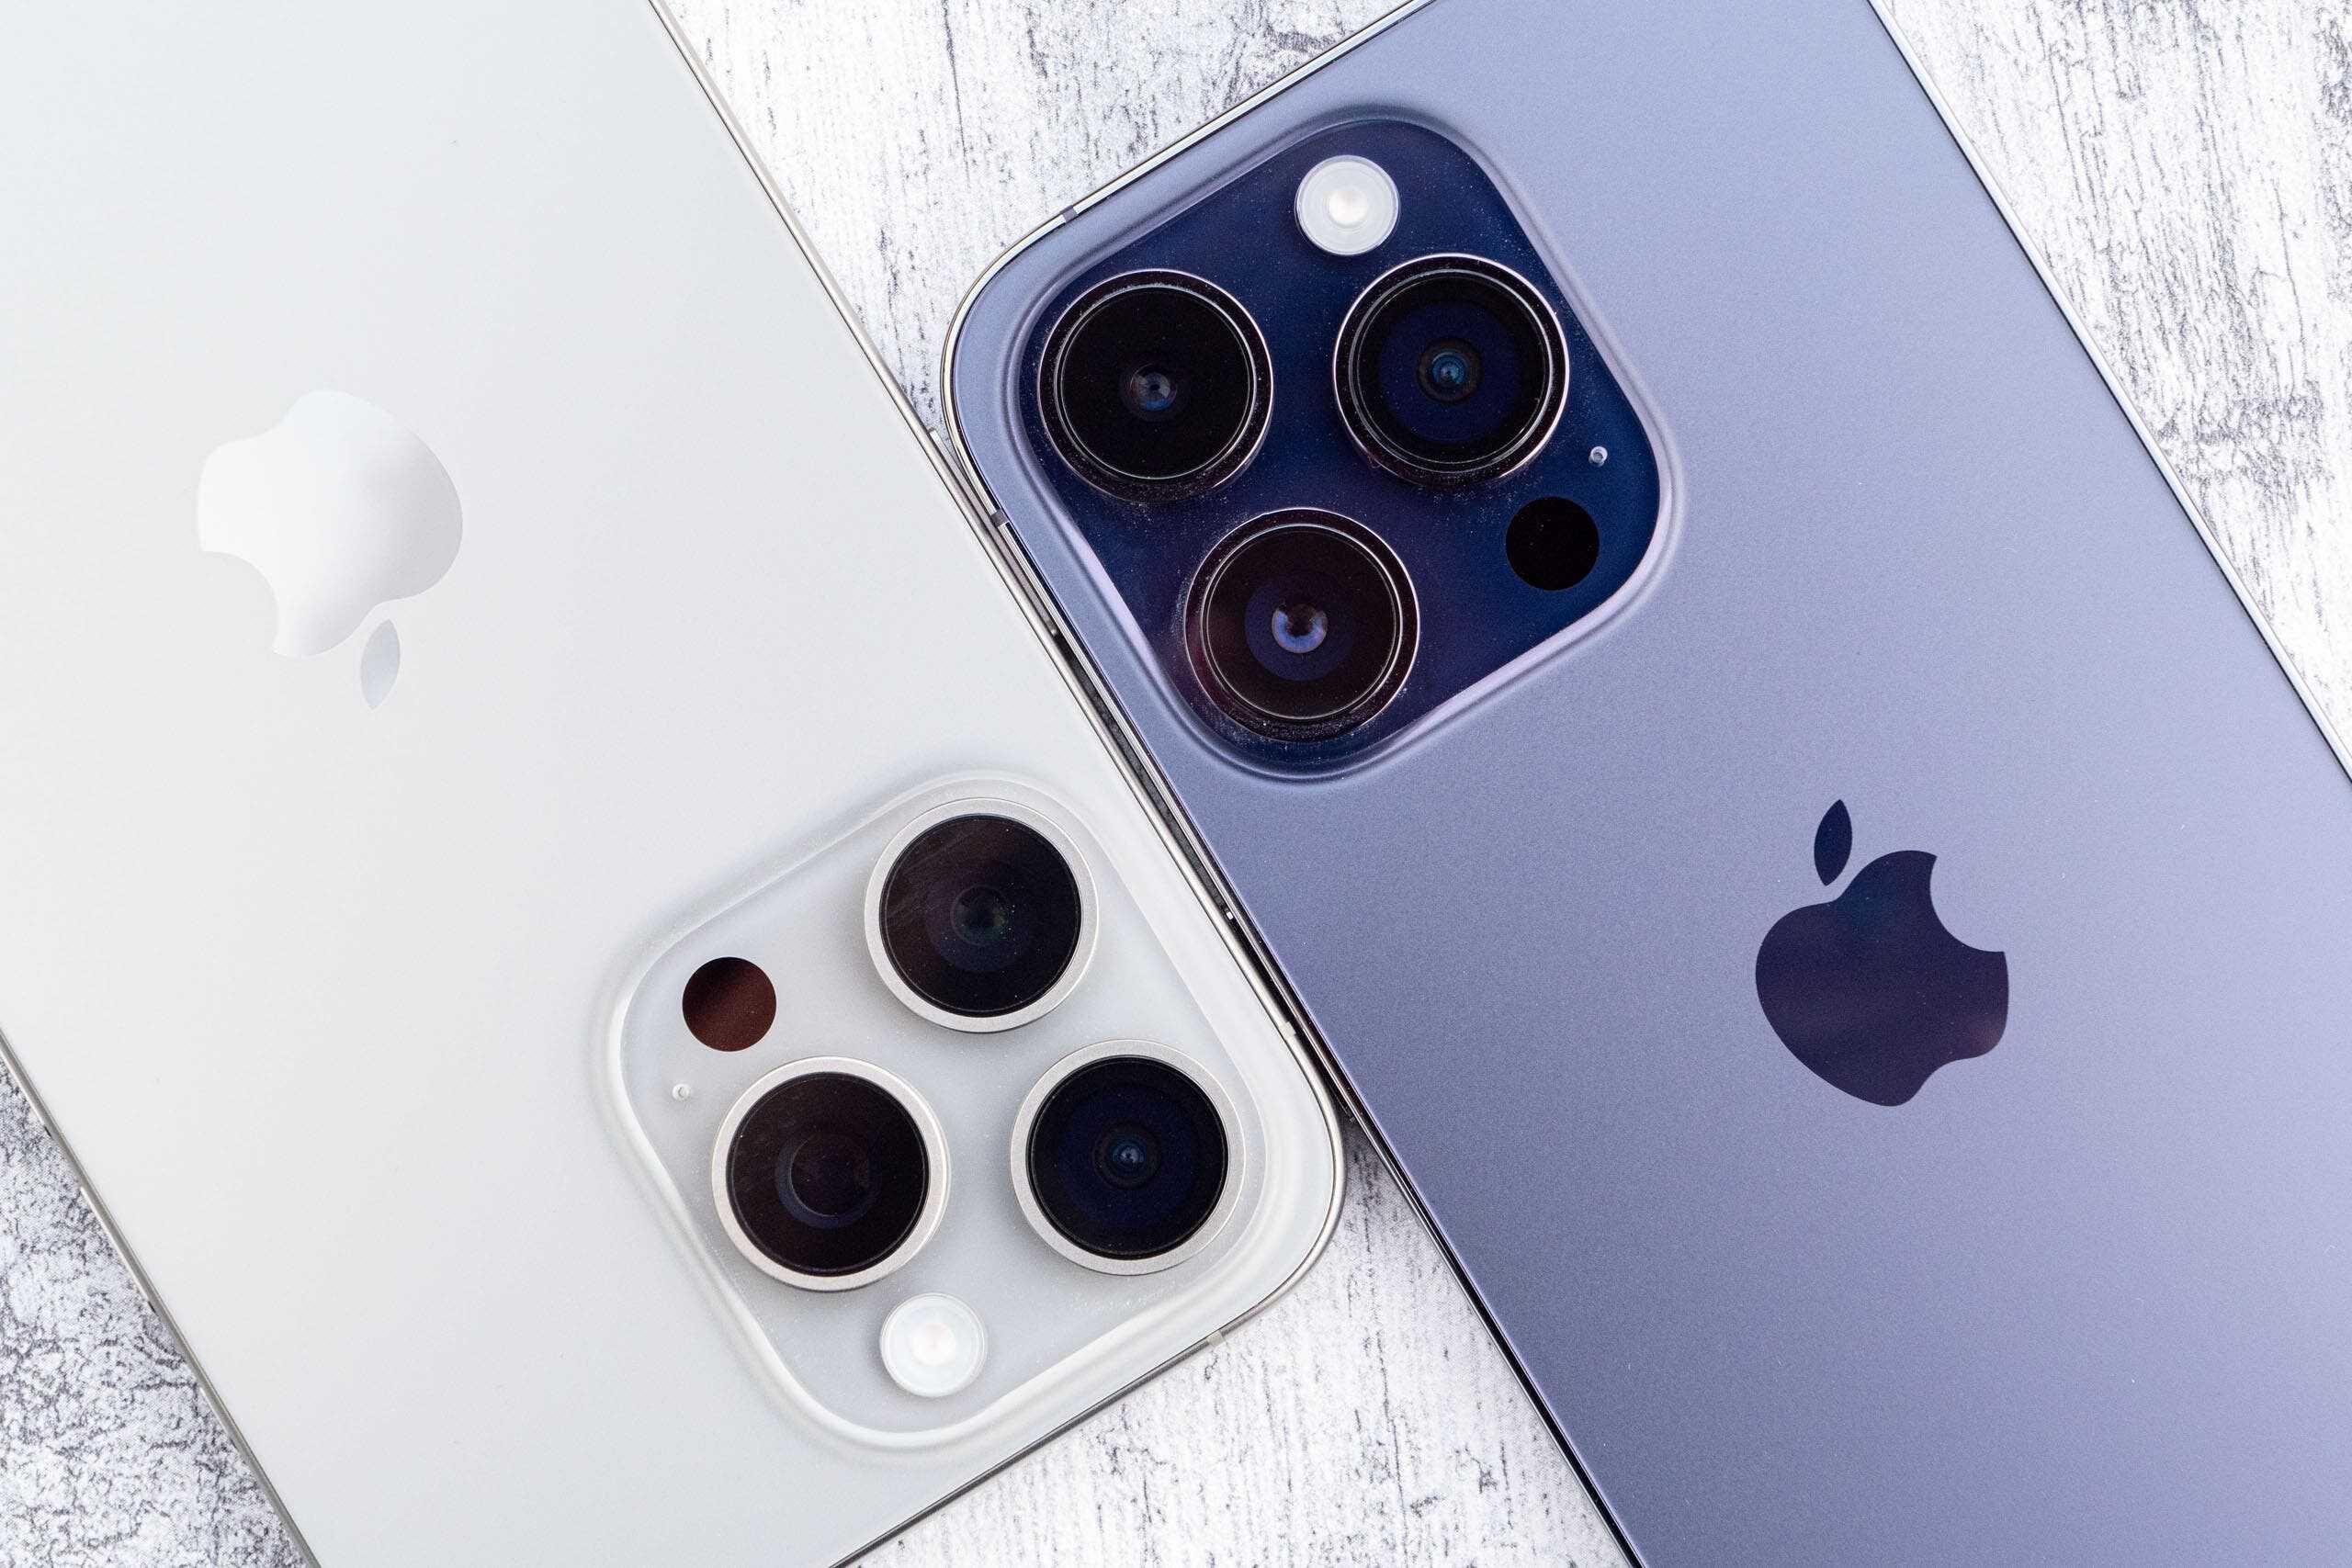 iPhone Pro Max Apple antitrust lawsuit